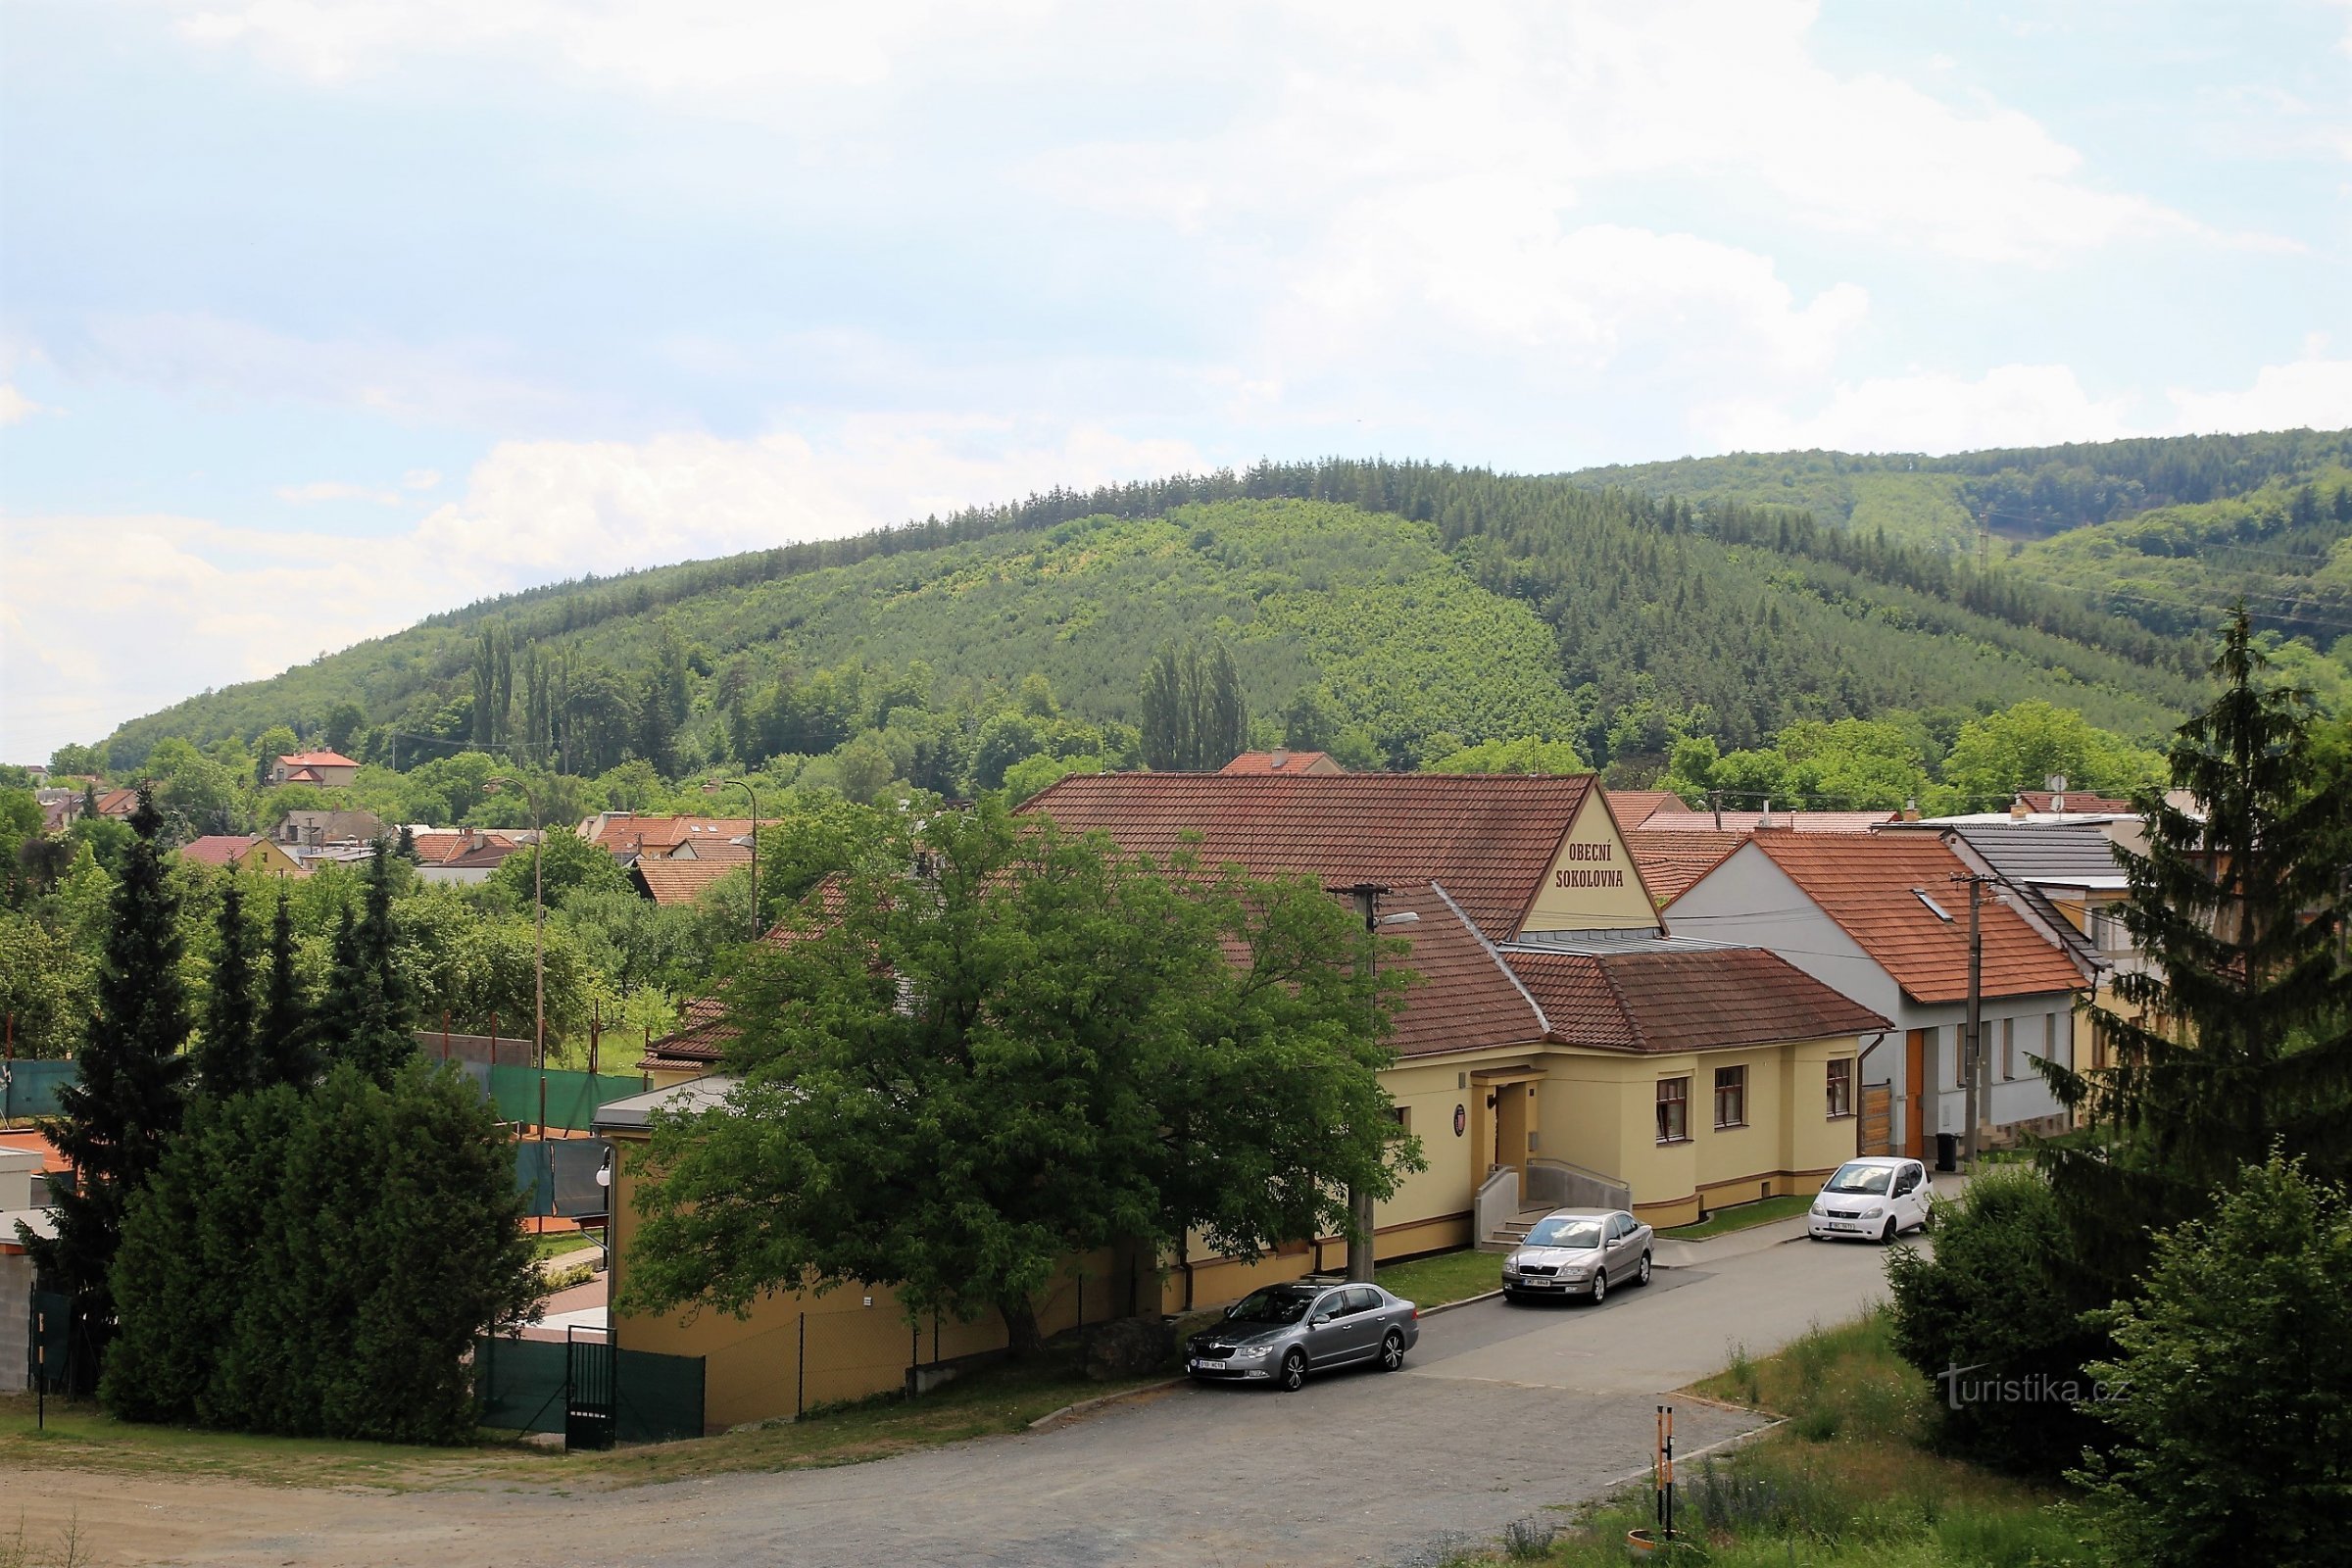 Näkymä kylään ja omaleimaiselle Ostrá horan huipulle